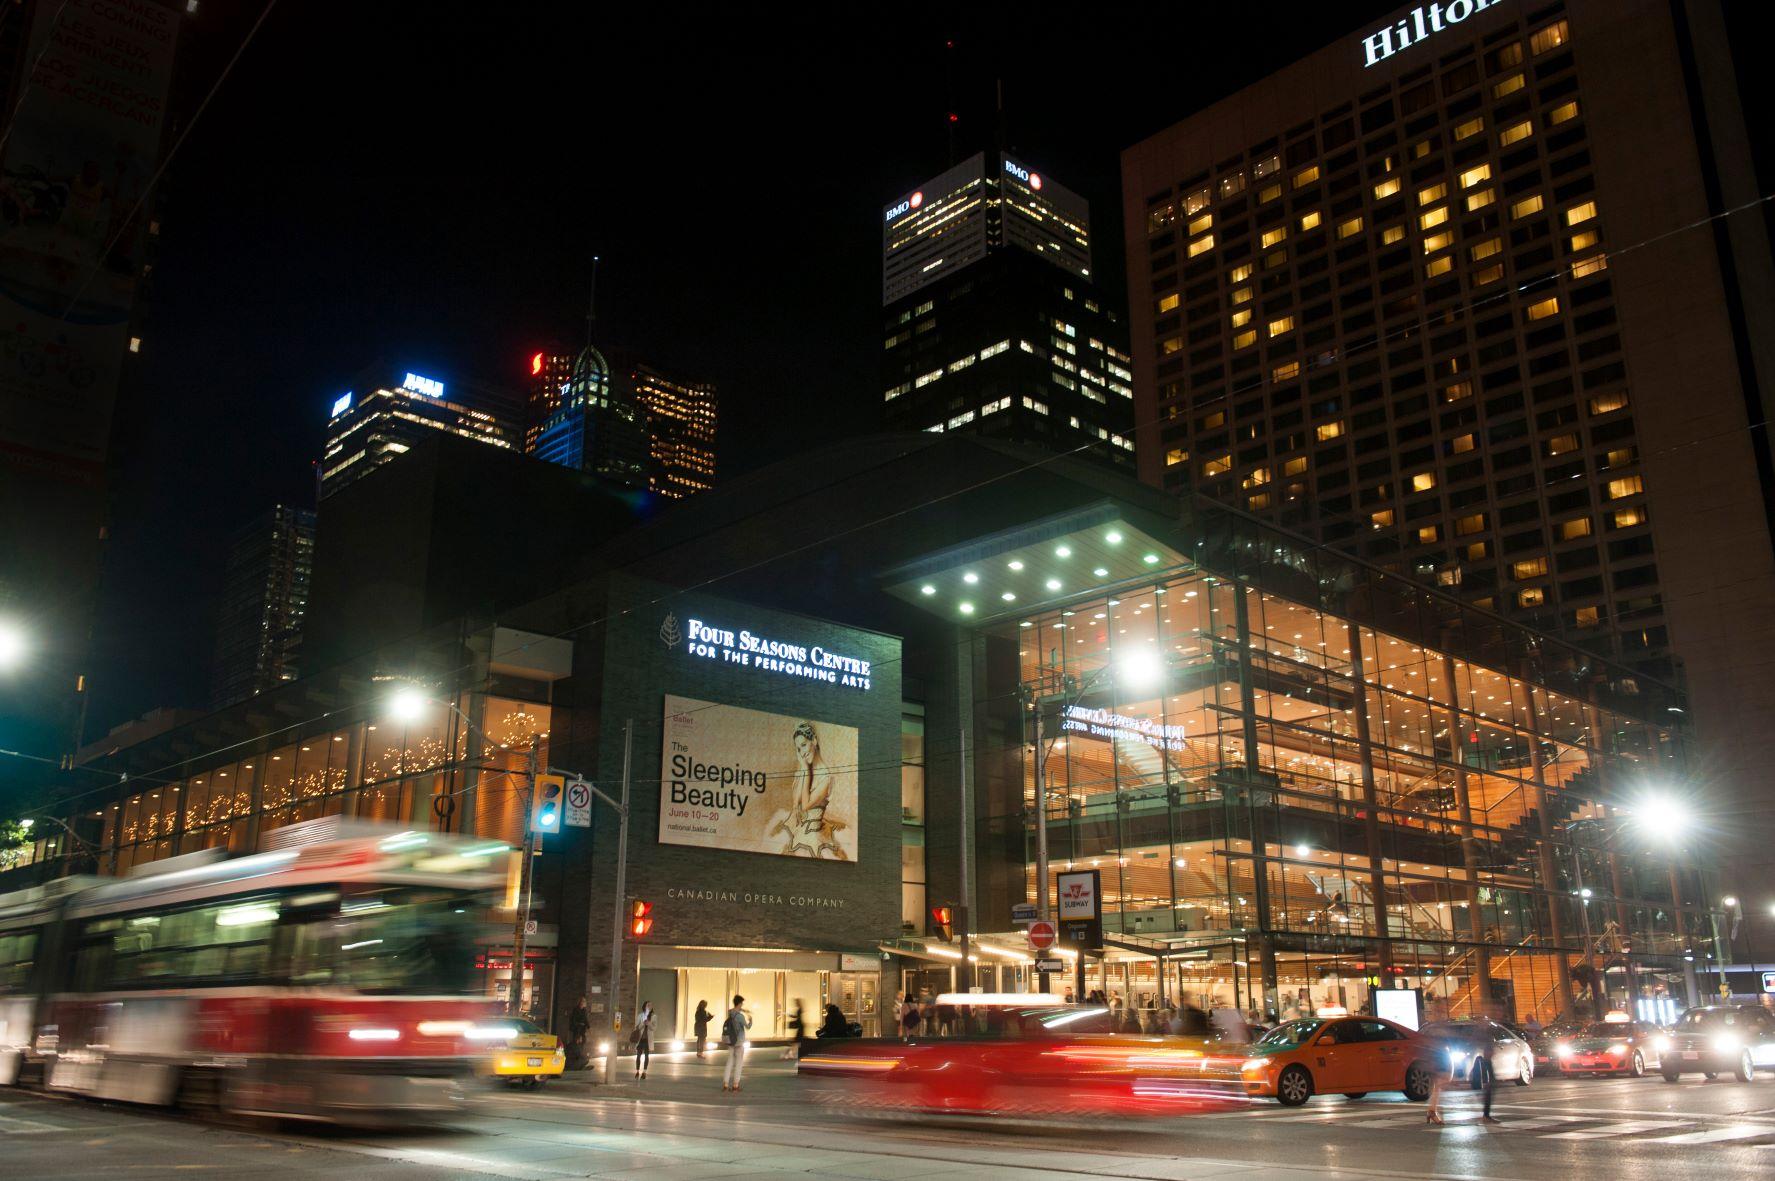 Four Seasons Centre, Toronto